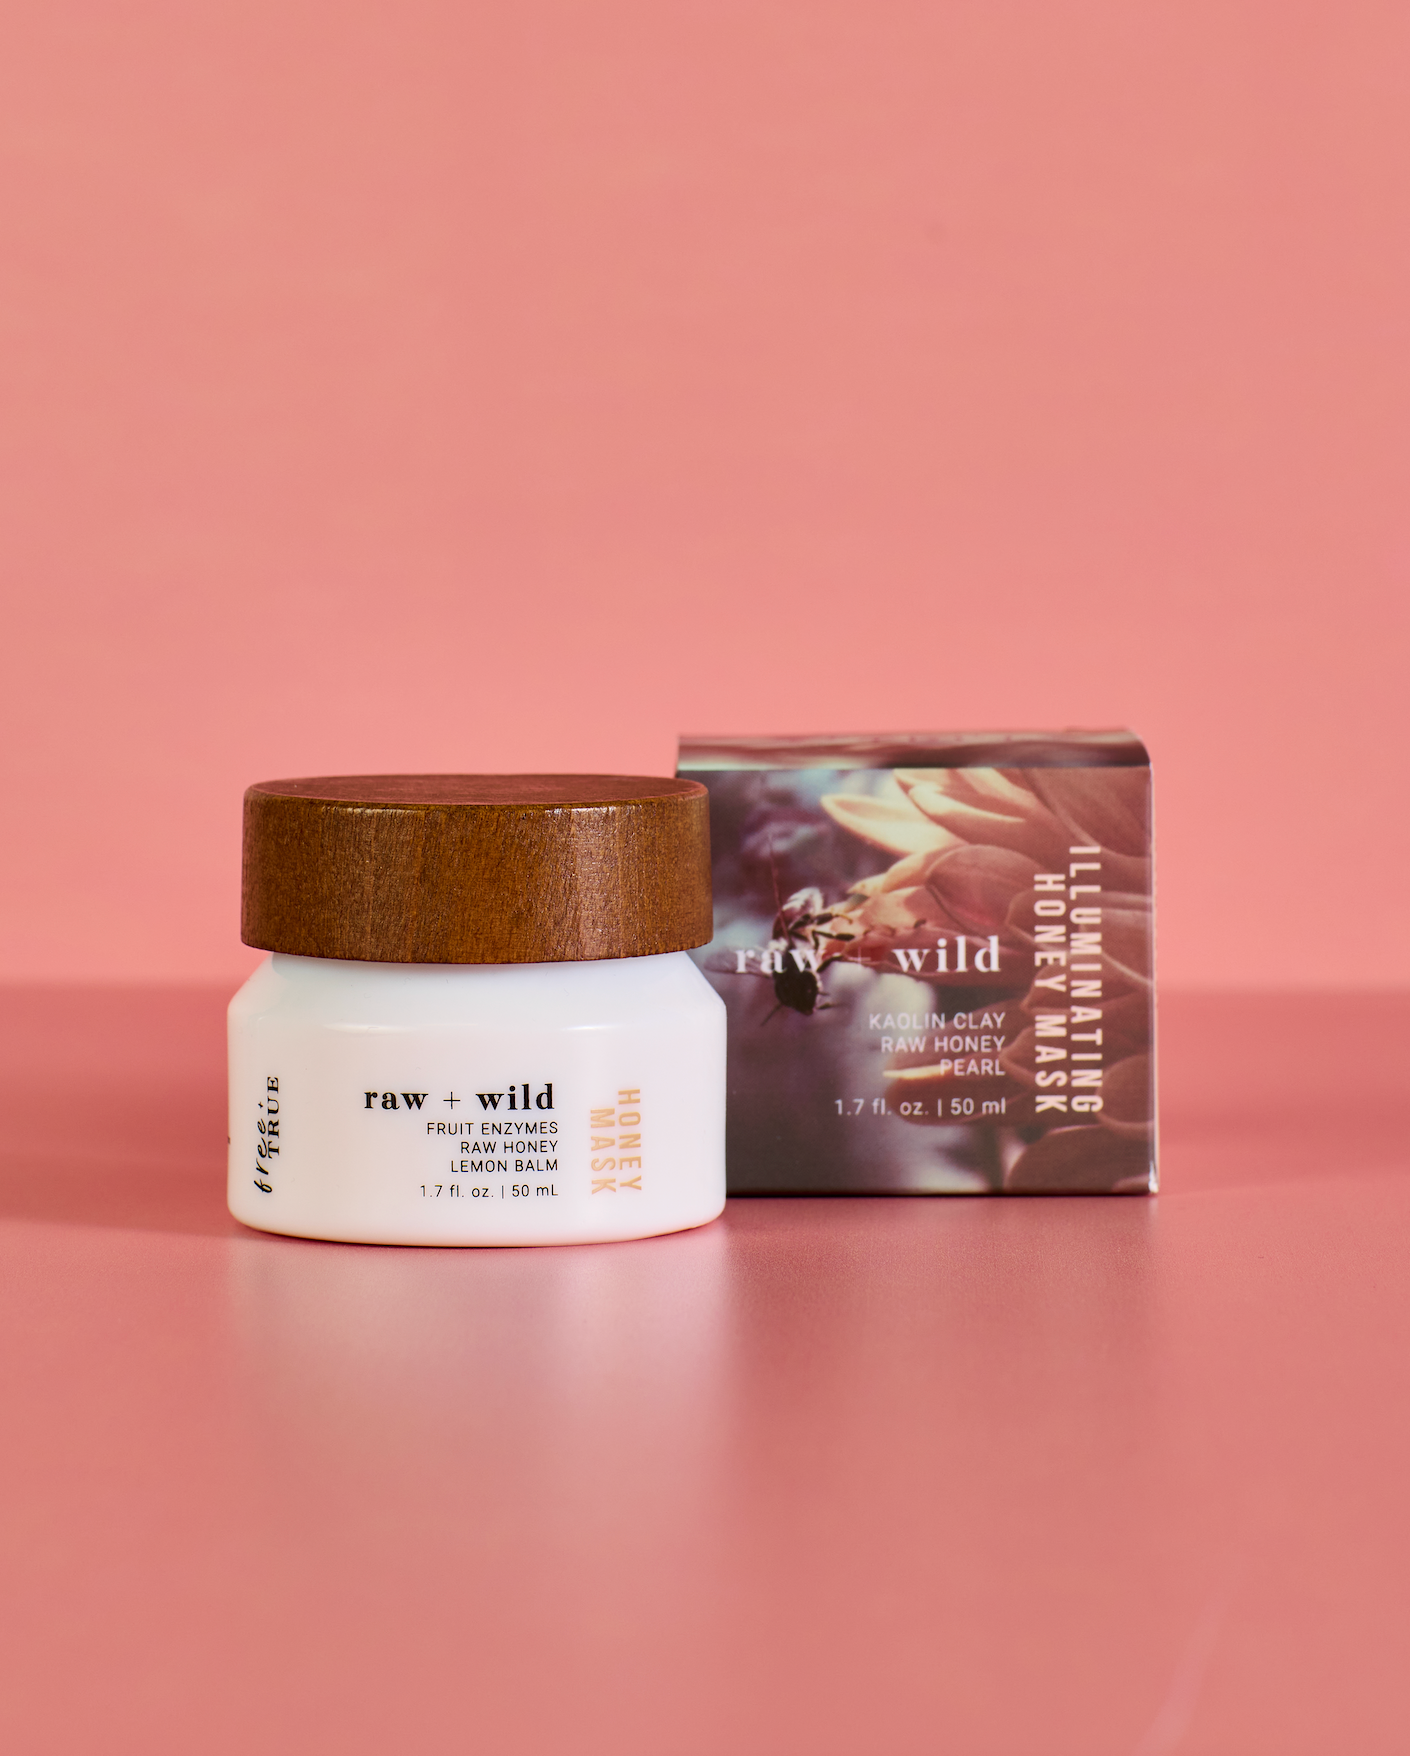 Raw + Wild - Máscara iluminadora de miel (1.7 fl oz)